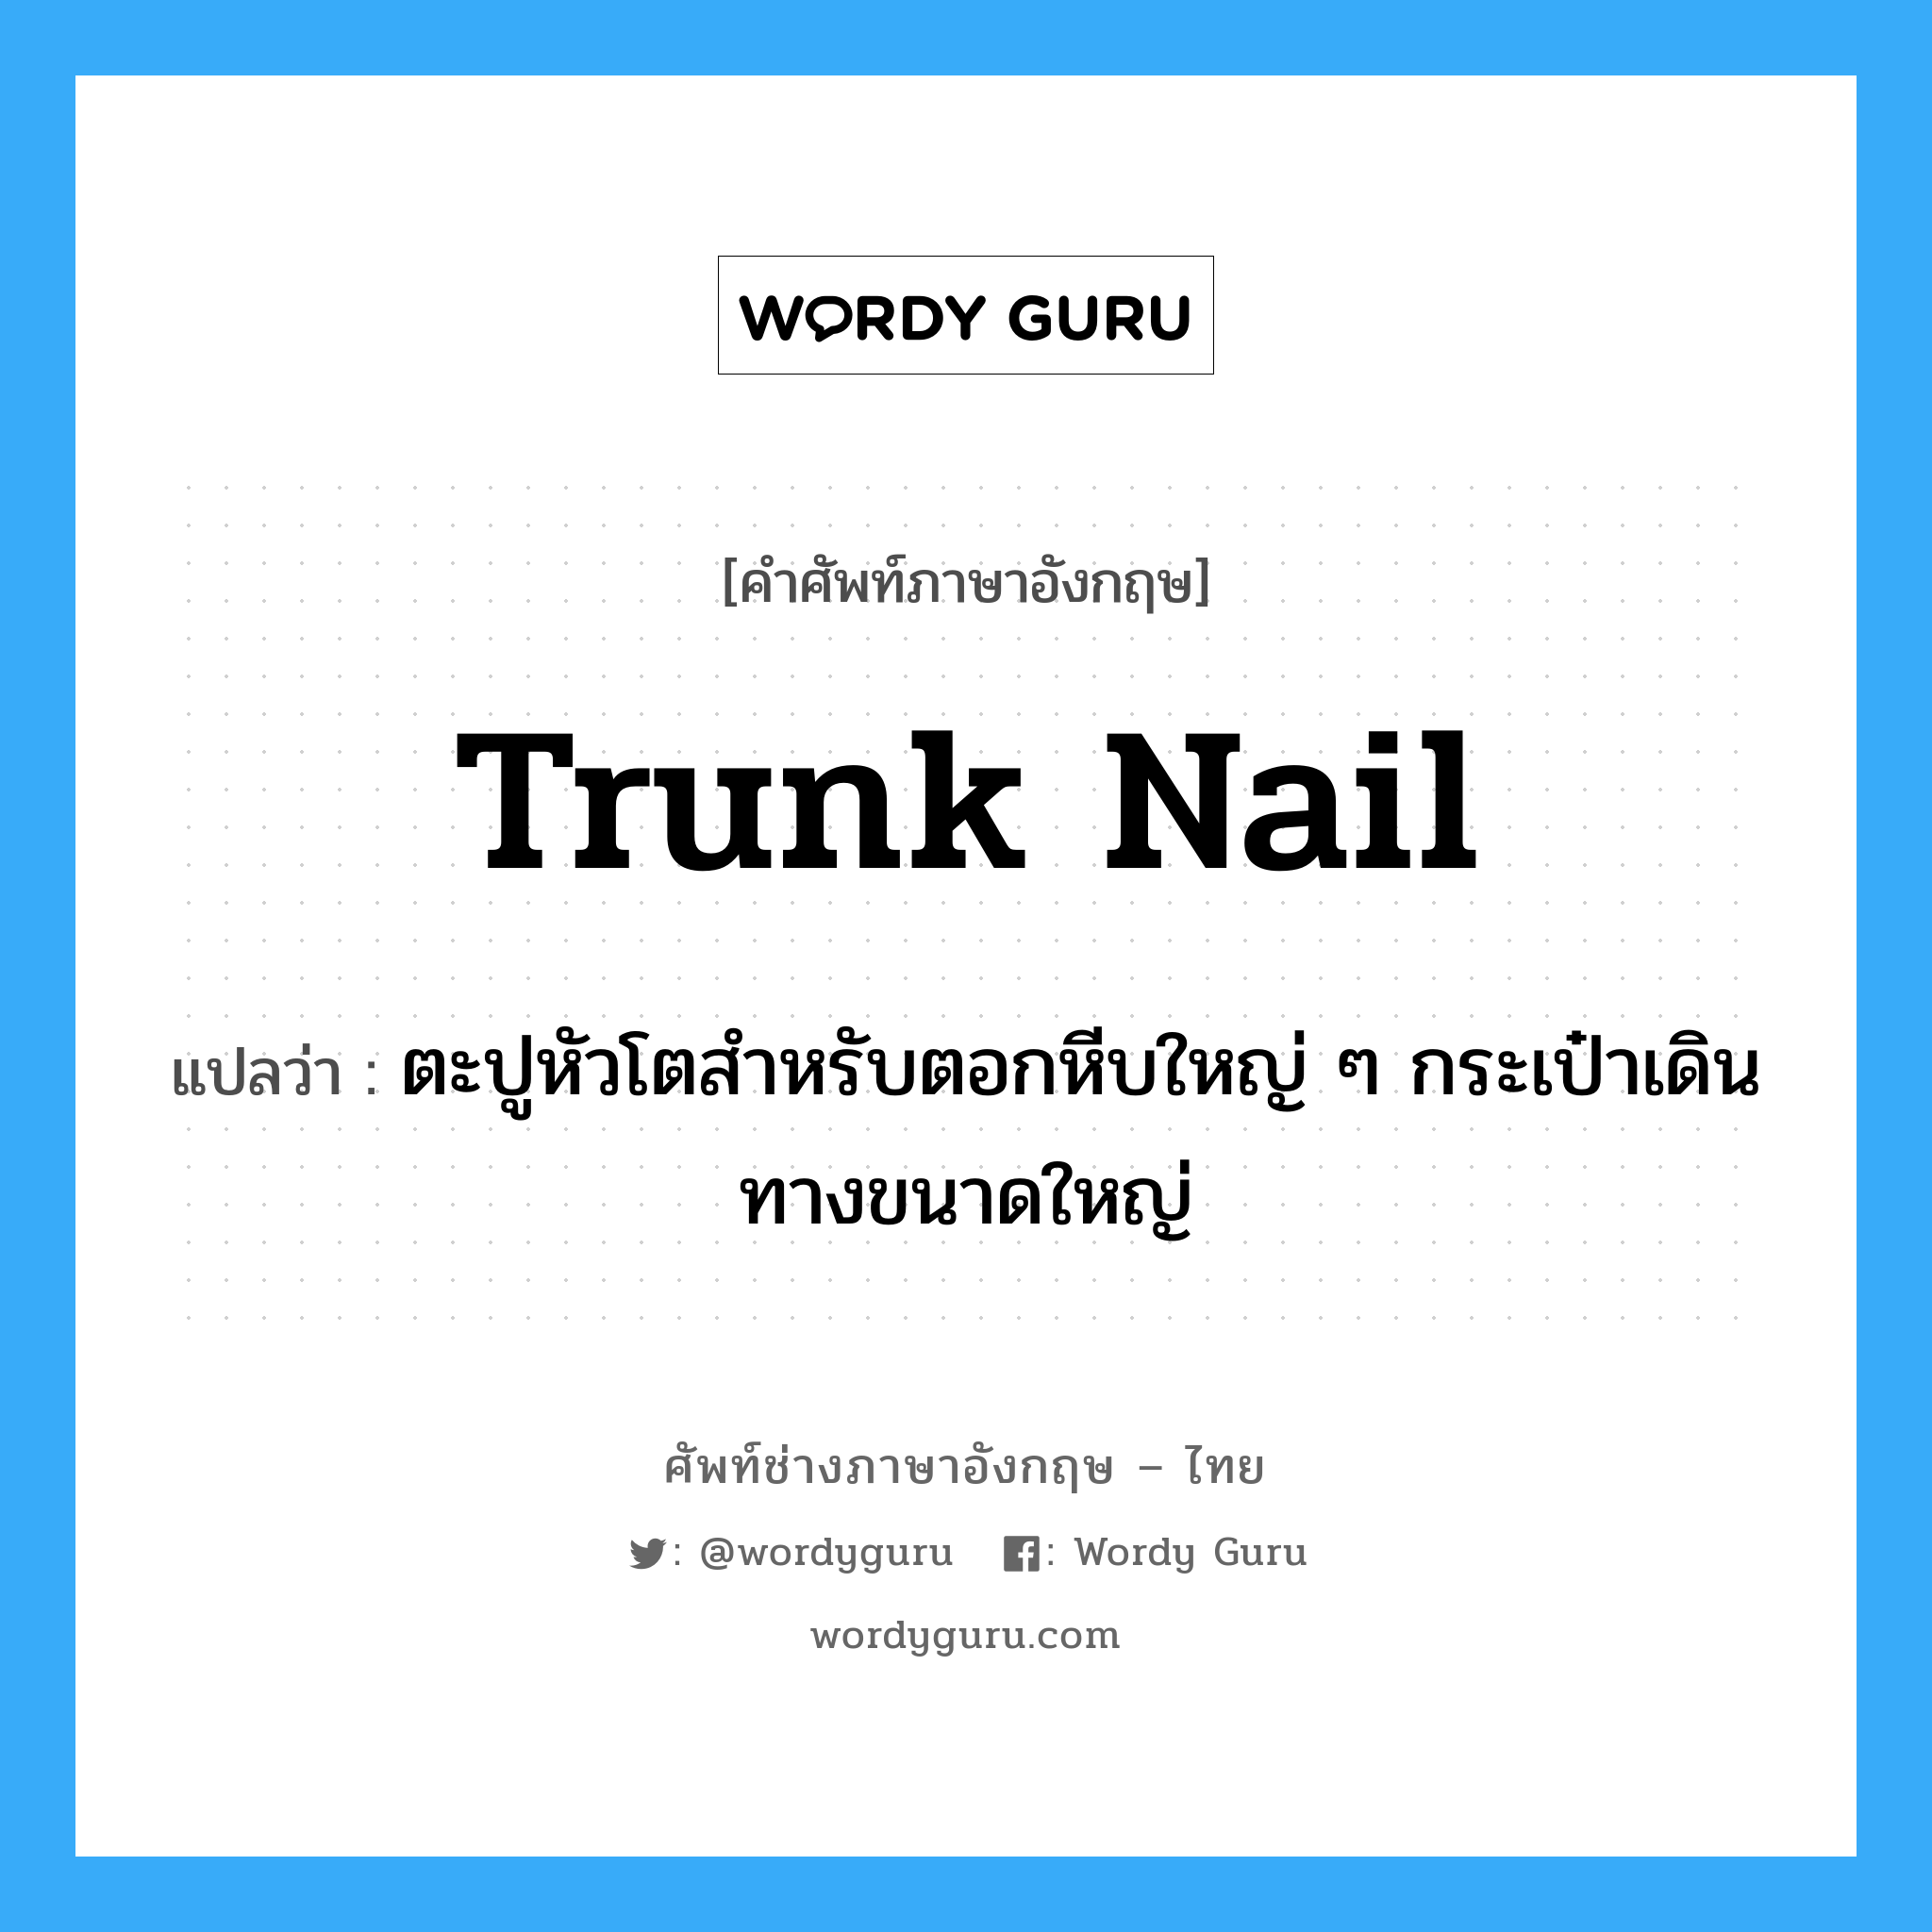 trunk nail แปลว่า?, คำศัพท์ช่างภาษาอังกฤษ - ไทย trunk nail คำศัพท์ภาษาอังกฤษ trunk nail แปลว่า ตะปูหัวโตสำหรับตอกหีบใหญ่ ๆ กระเป๋าเดินทางขนาดใหญ่